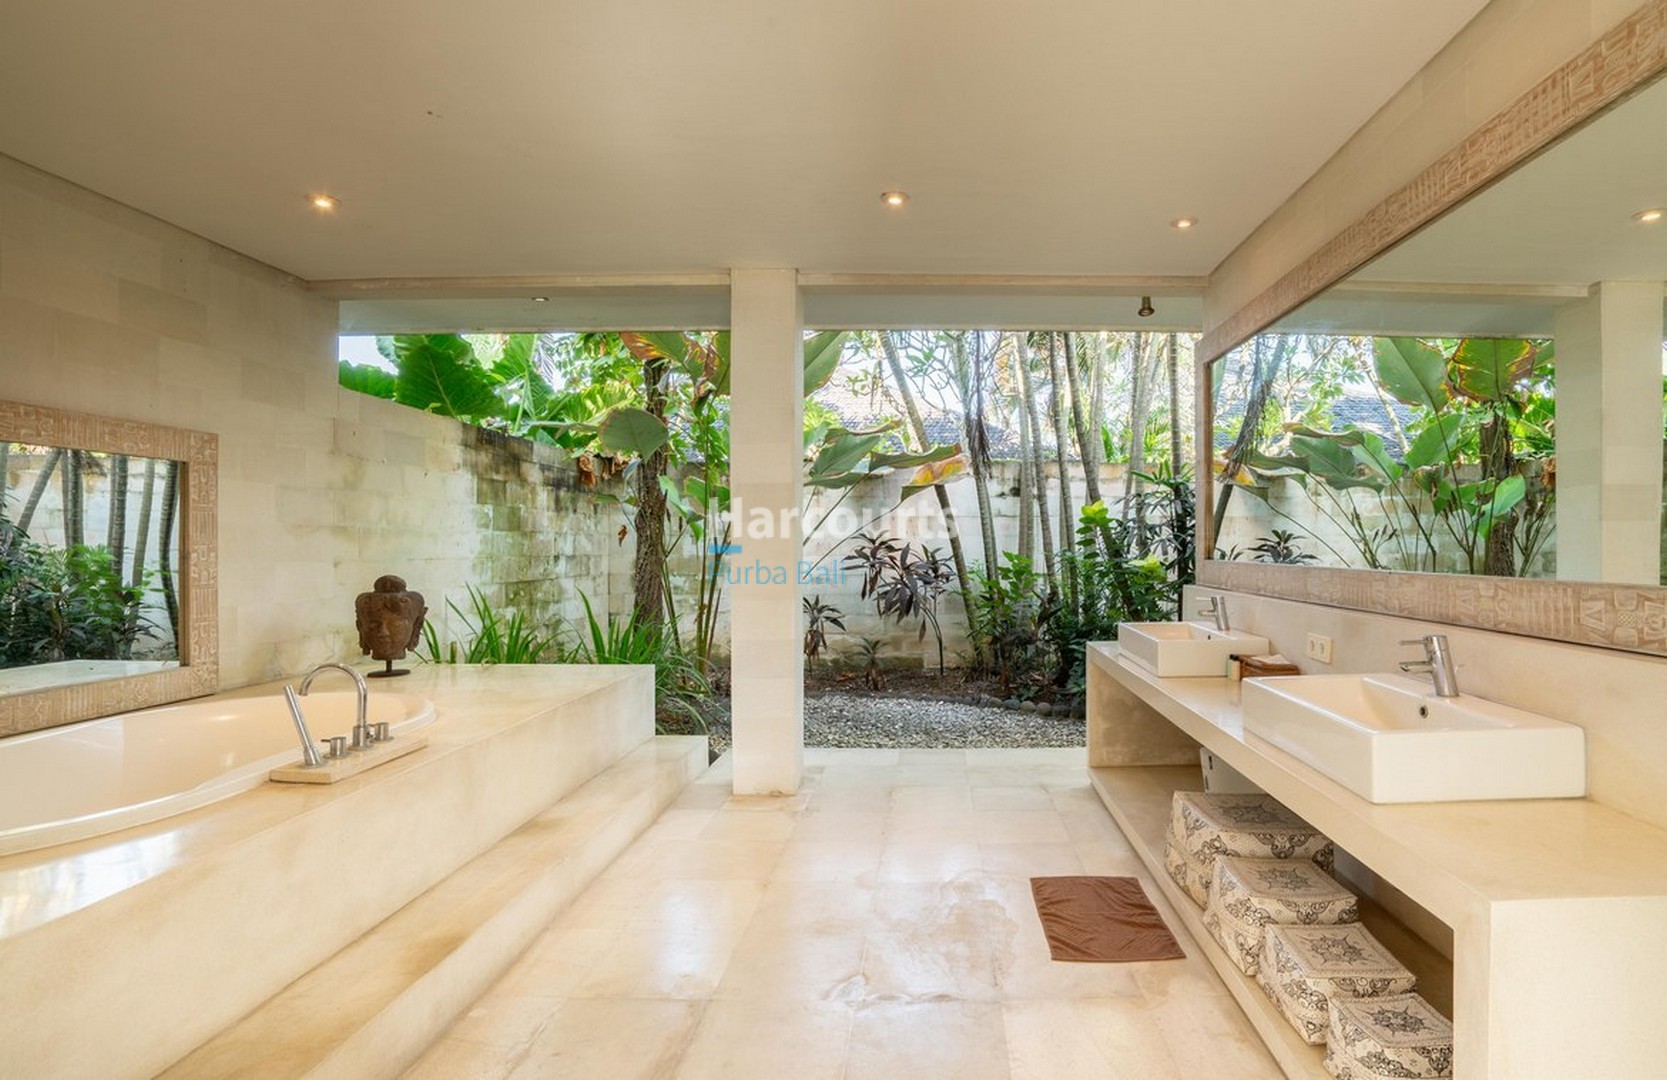 Massive 6-Bedroom Beachfront Villa in Beraban Bali for sale